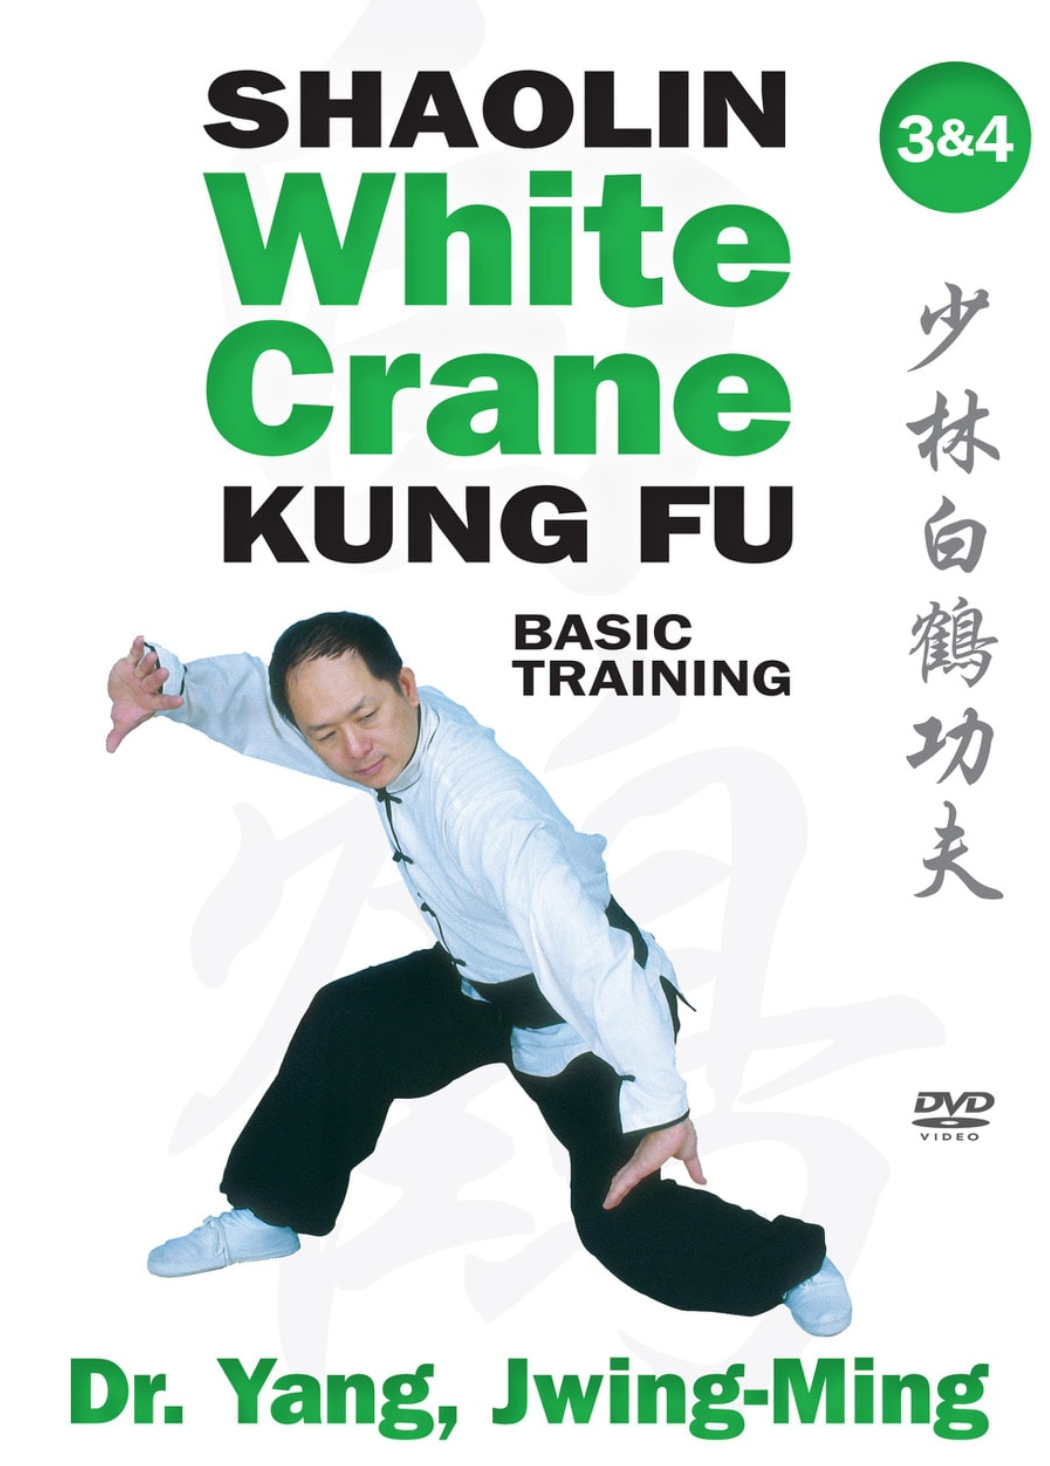 少林寺白鶴功夫基礎トレーニング DVD Vol 3 & 4 (Dr Yang、Jwing Ming)